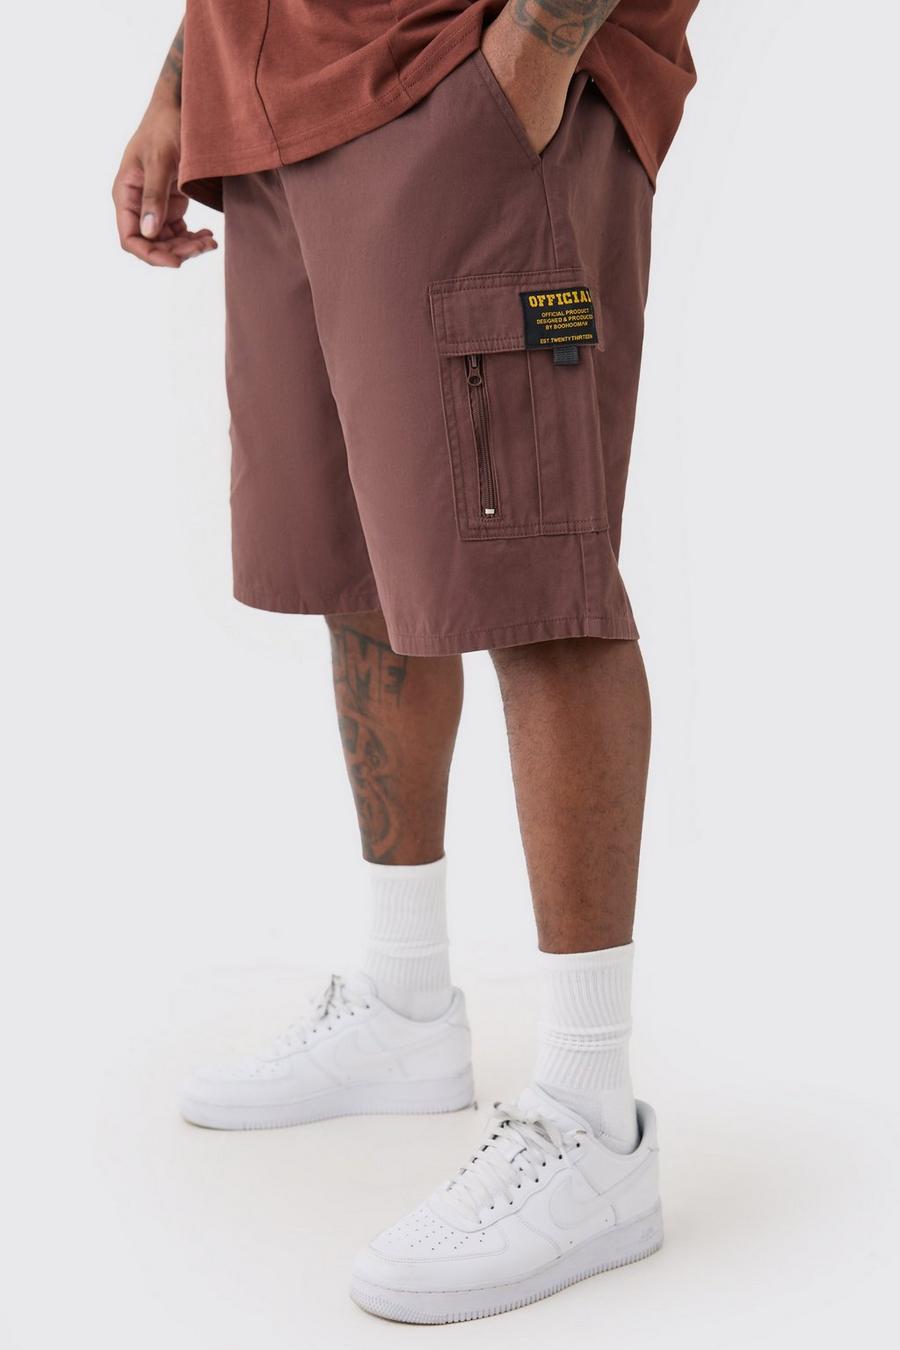 Las mejores ofertas en Solid Big & Tall Pantalones cortos para hombre Talla  42